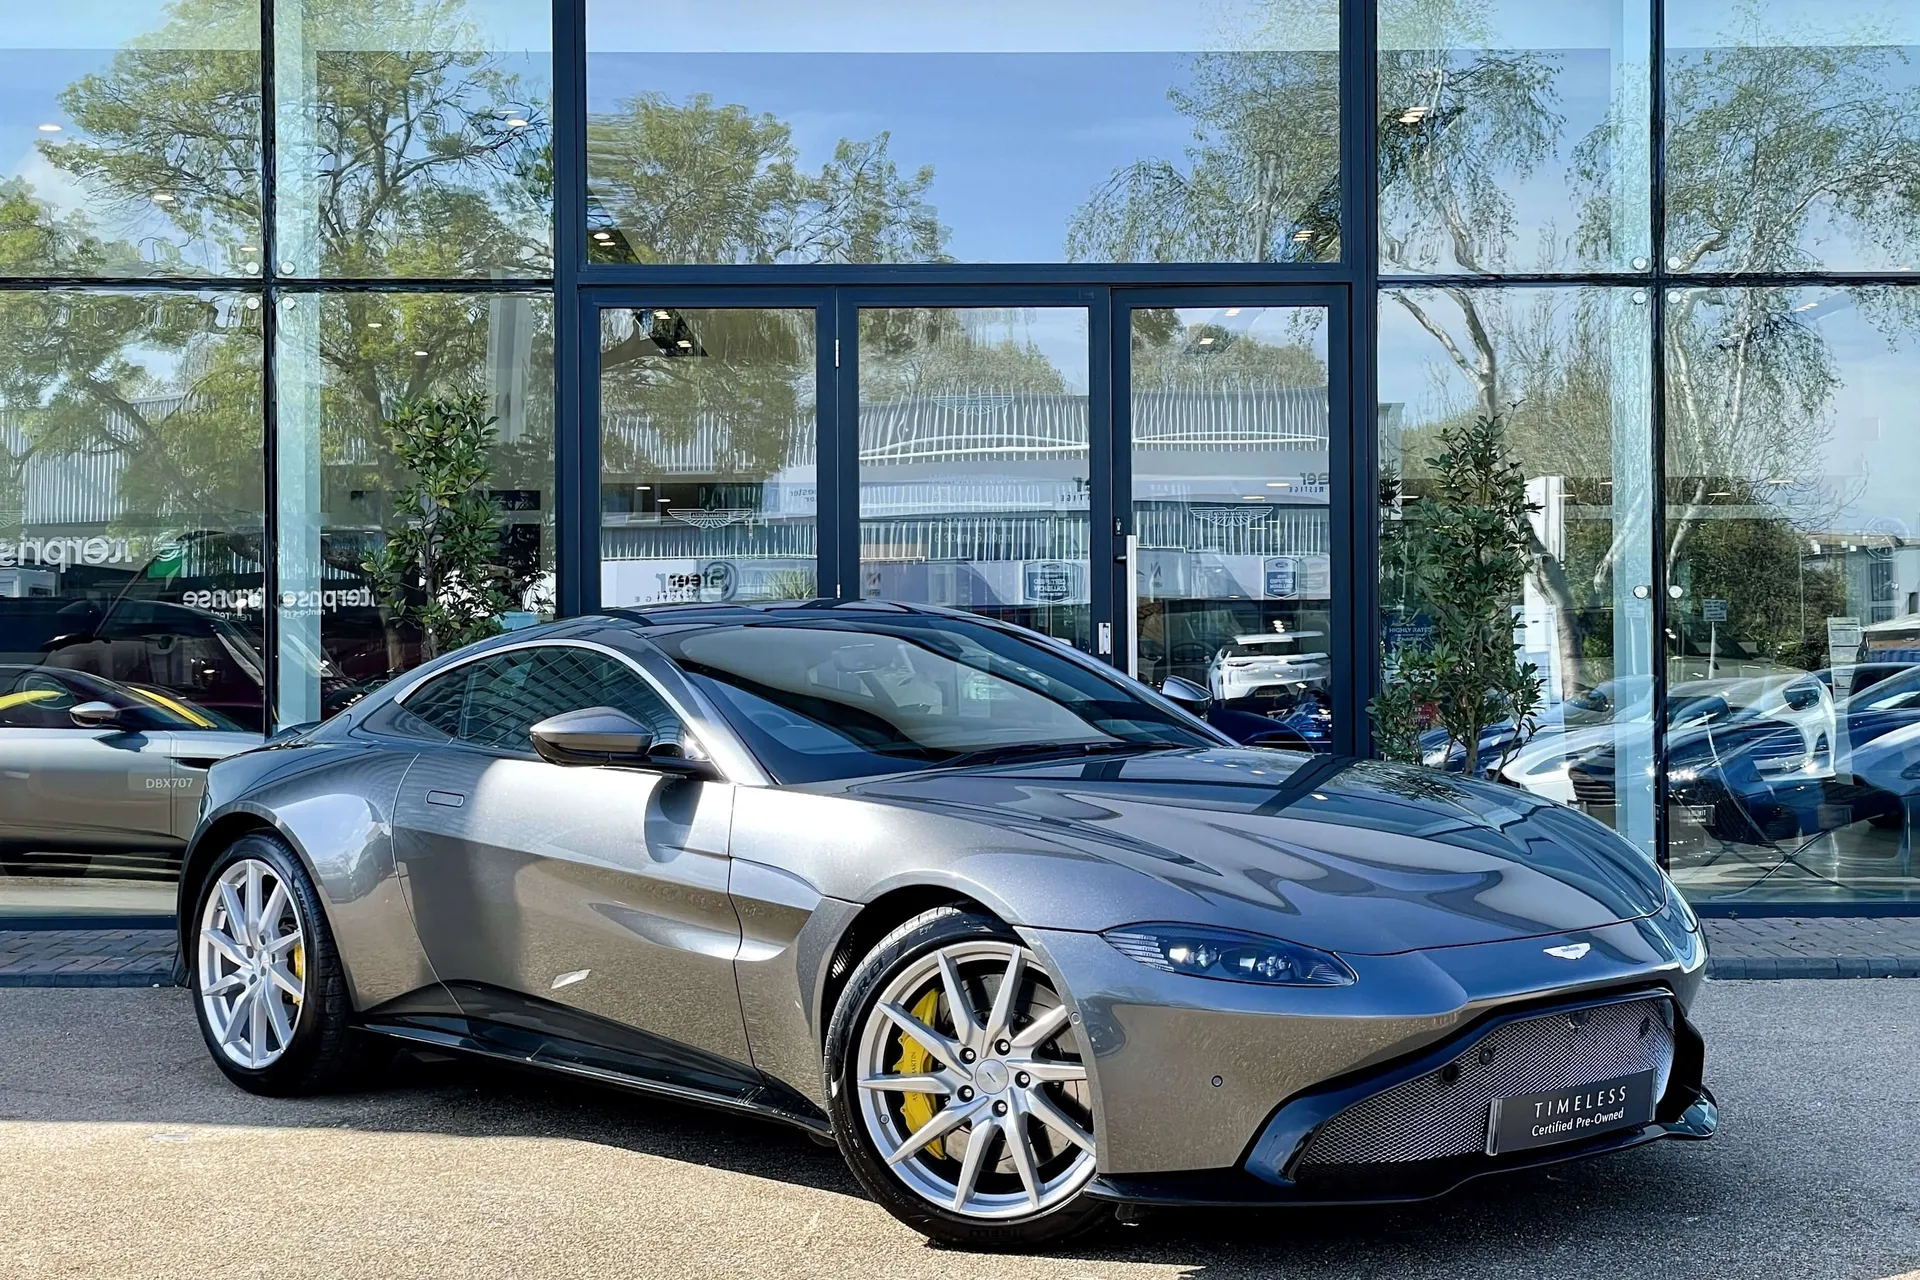 Aston Martin Vantage focused image